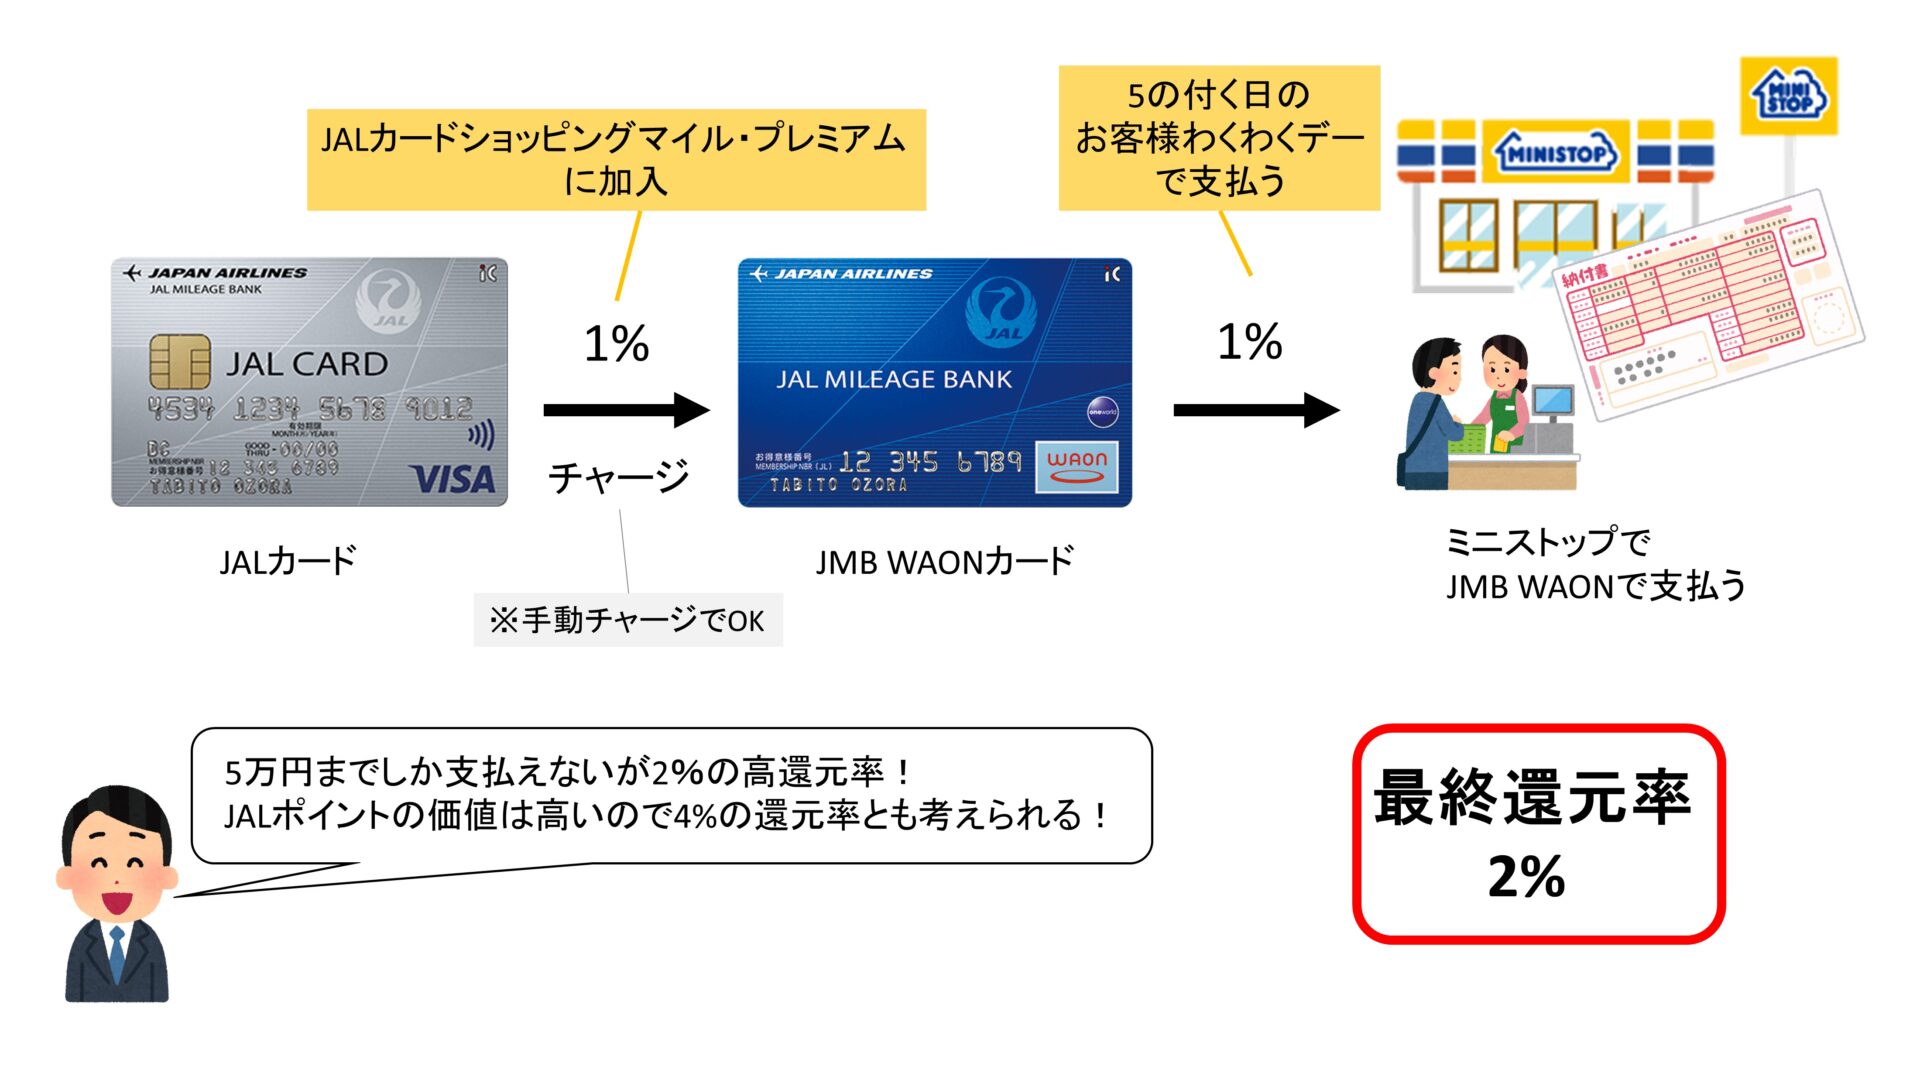 JALカード→JMB WAONカードの還元率